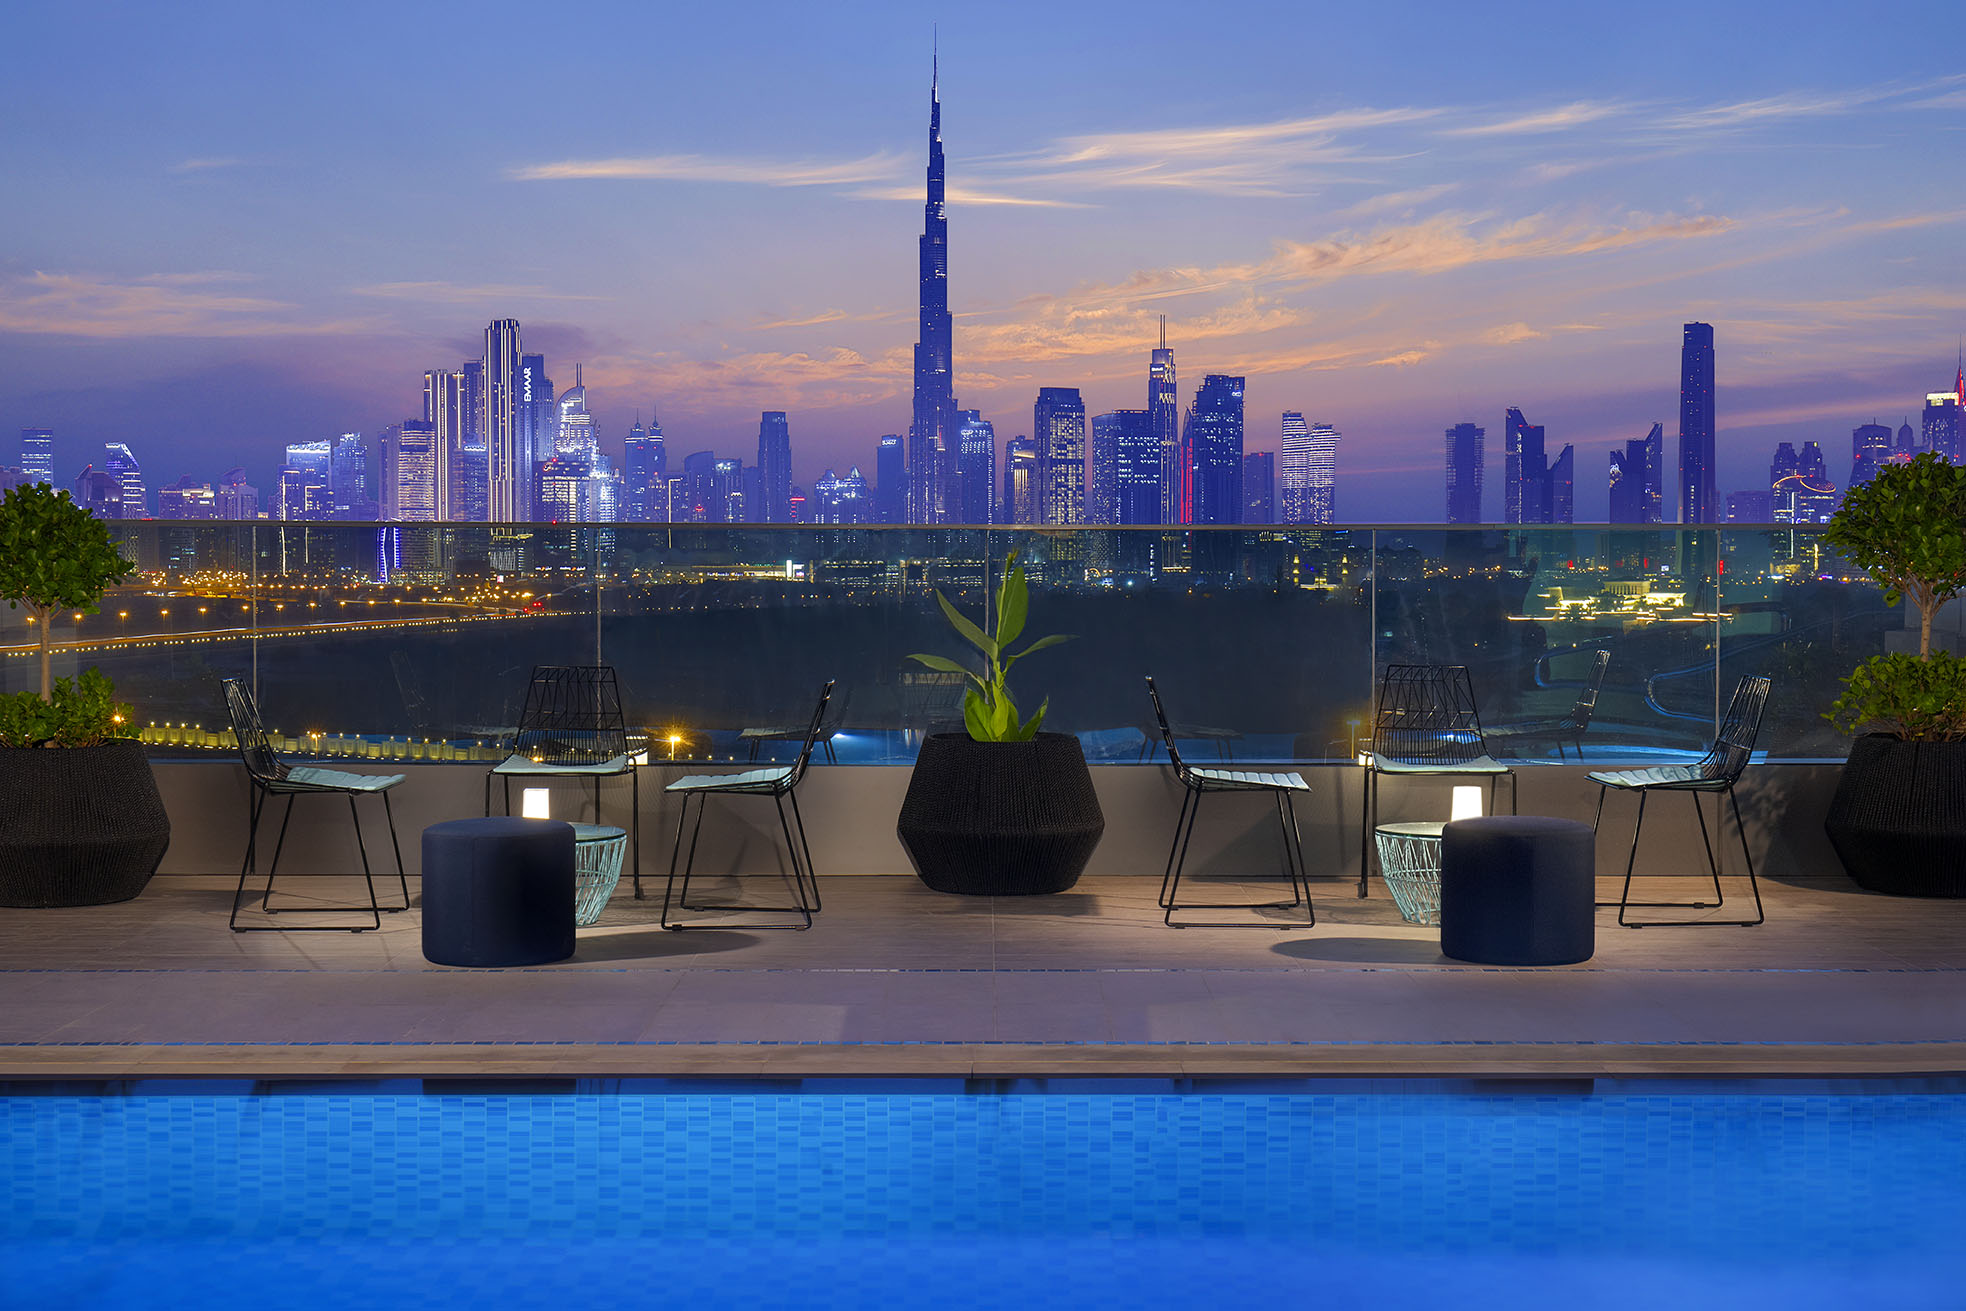 إفتتاح فندق ريزيدنس إن ماريوت الجداف الجديد في إمارة دبي